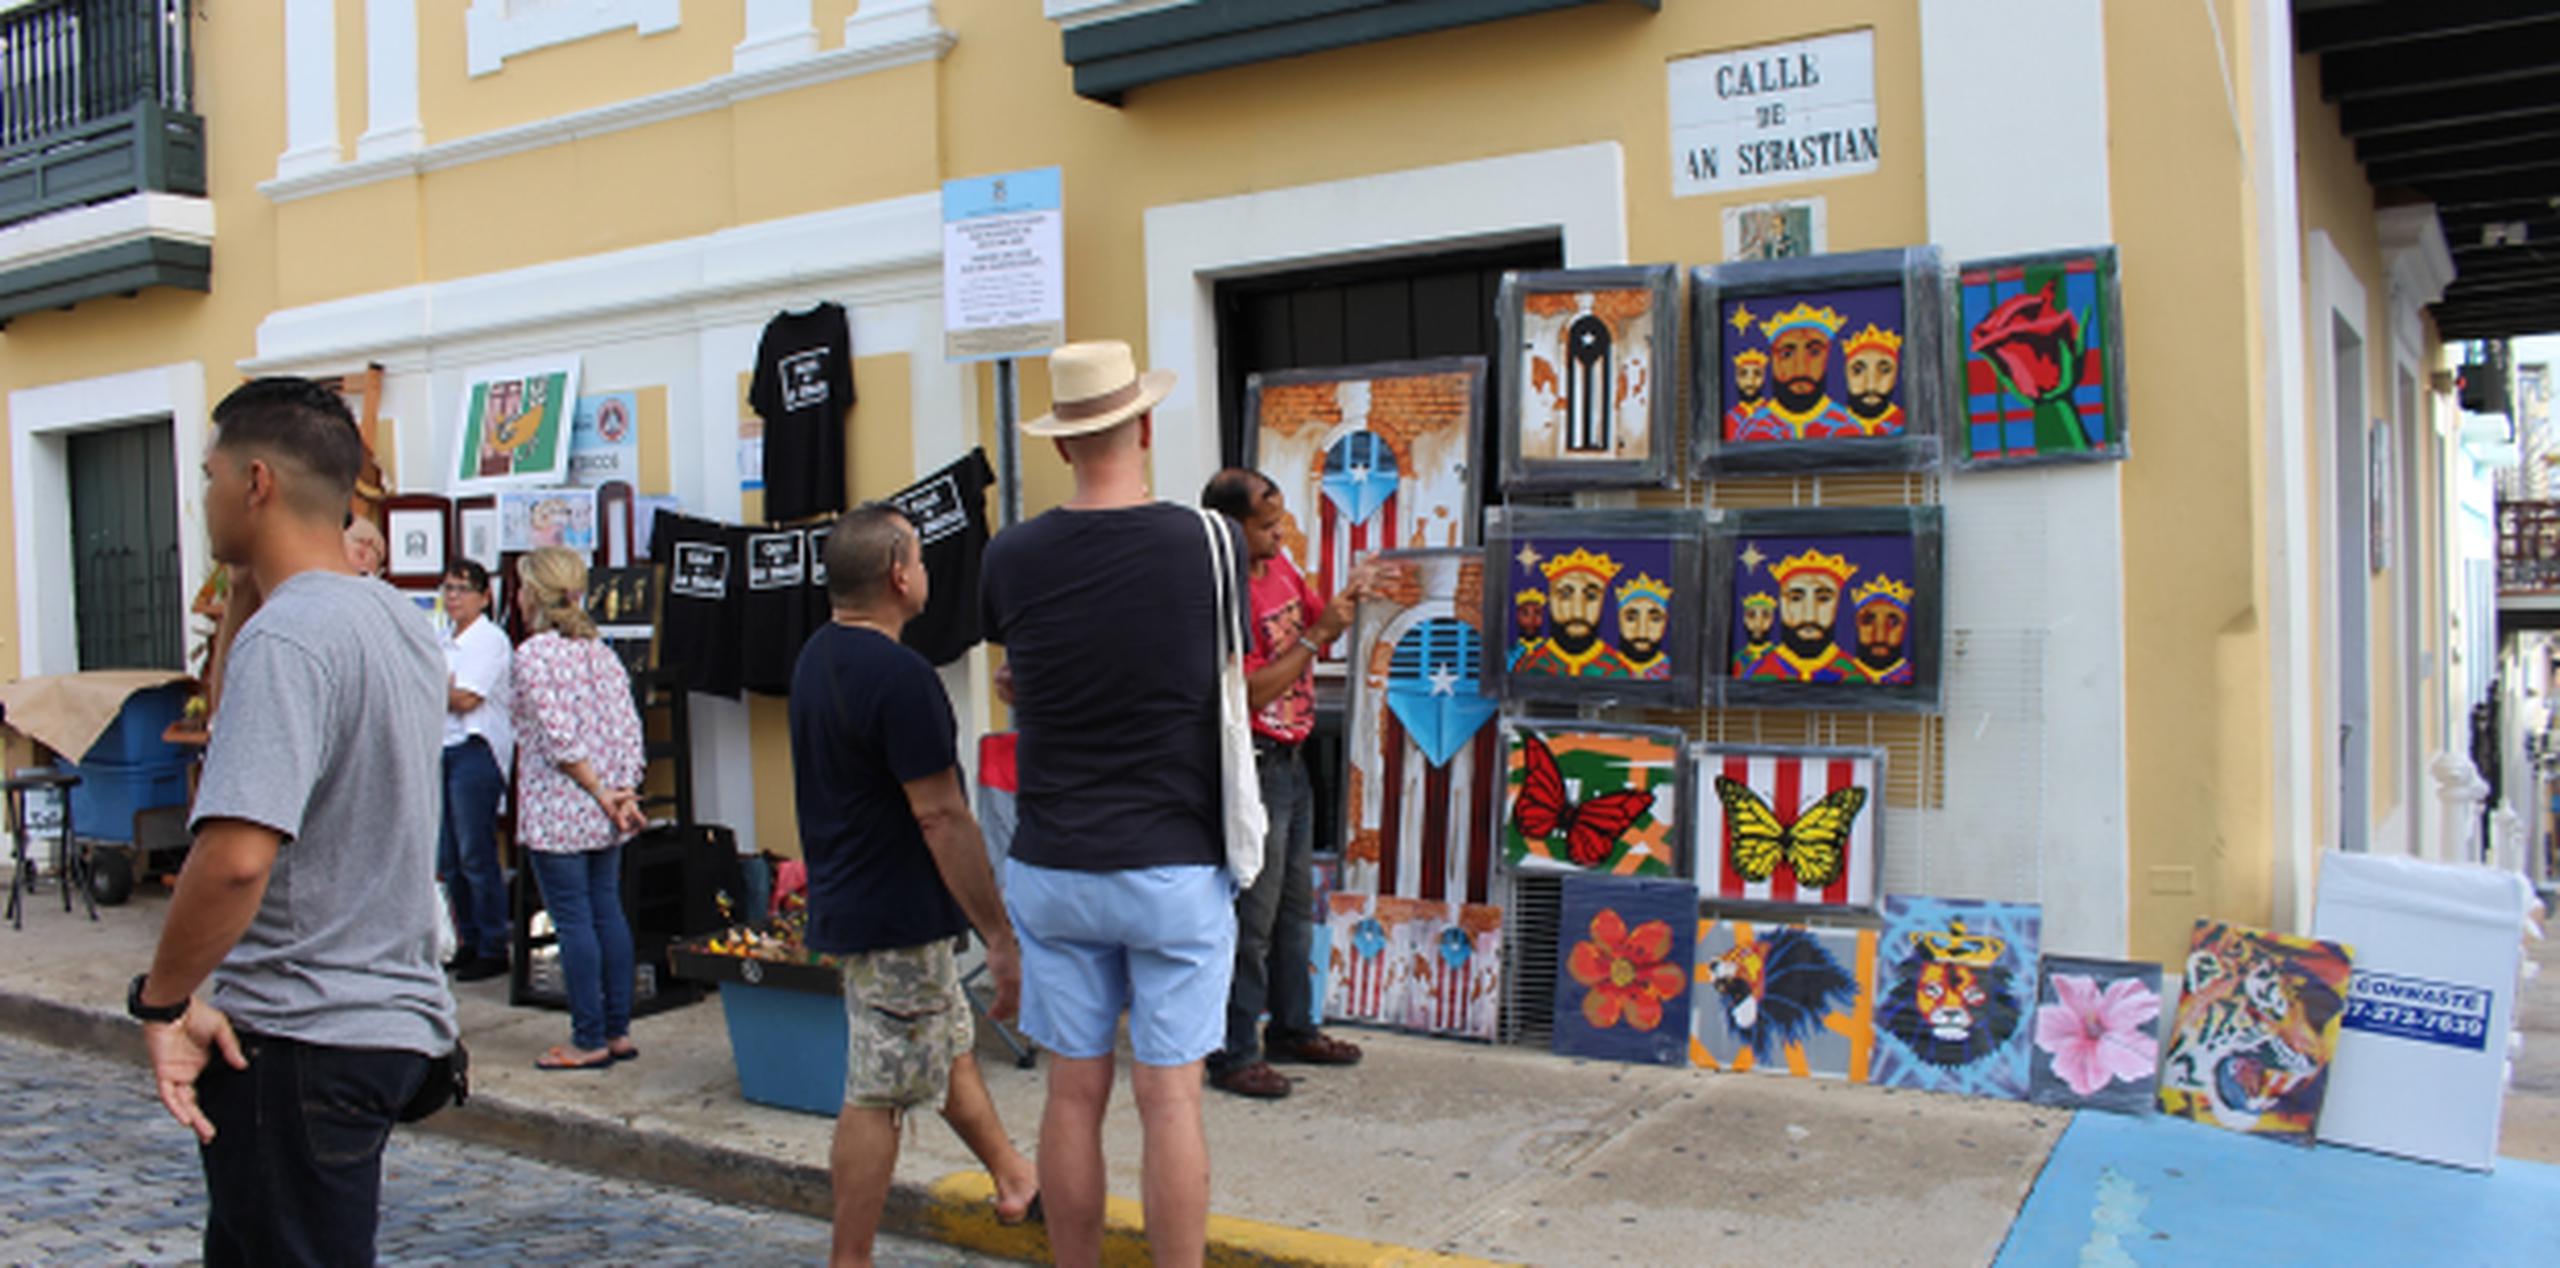 A lo largo de la Calle San Sebastián hay artistas, pero también es notable la baja en la cantidad.(pablo.martinez@gfrmedia.com)